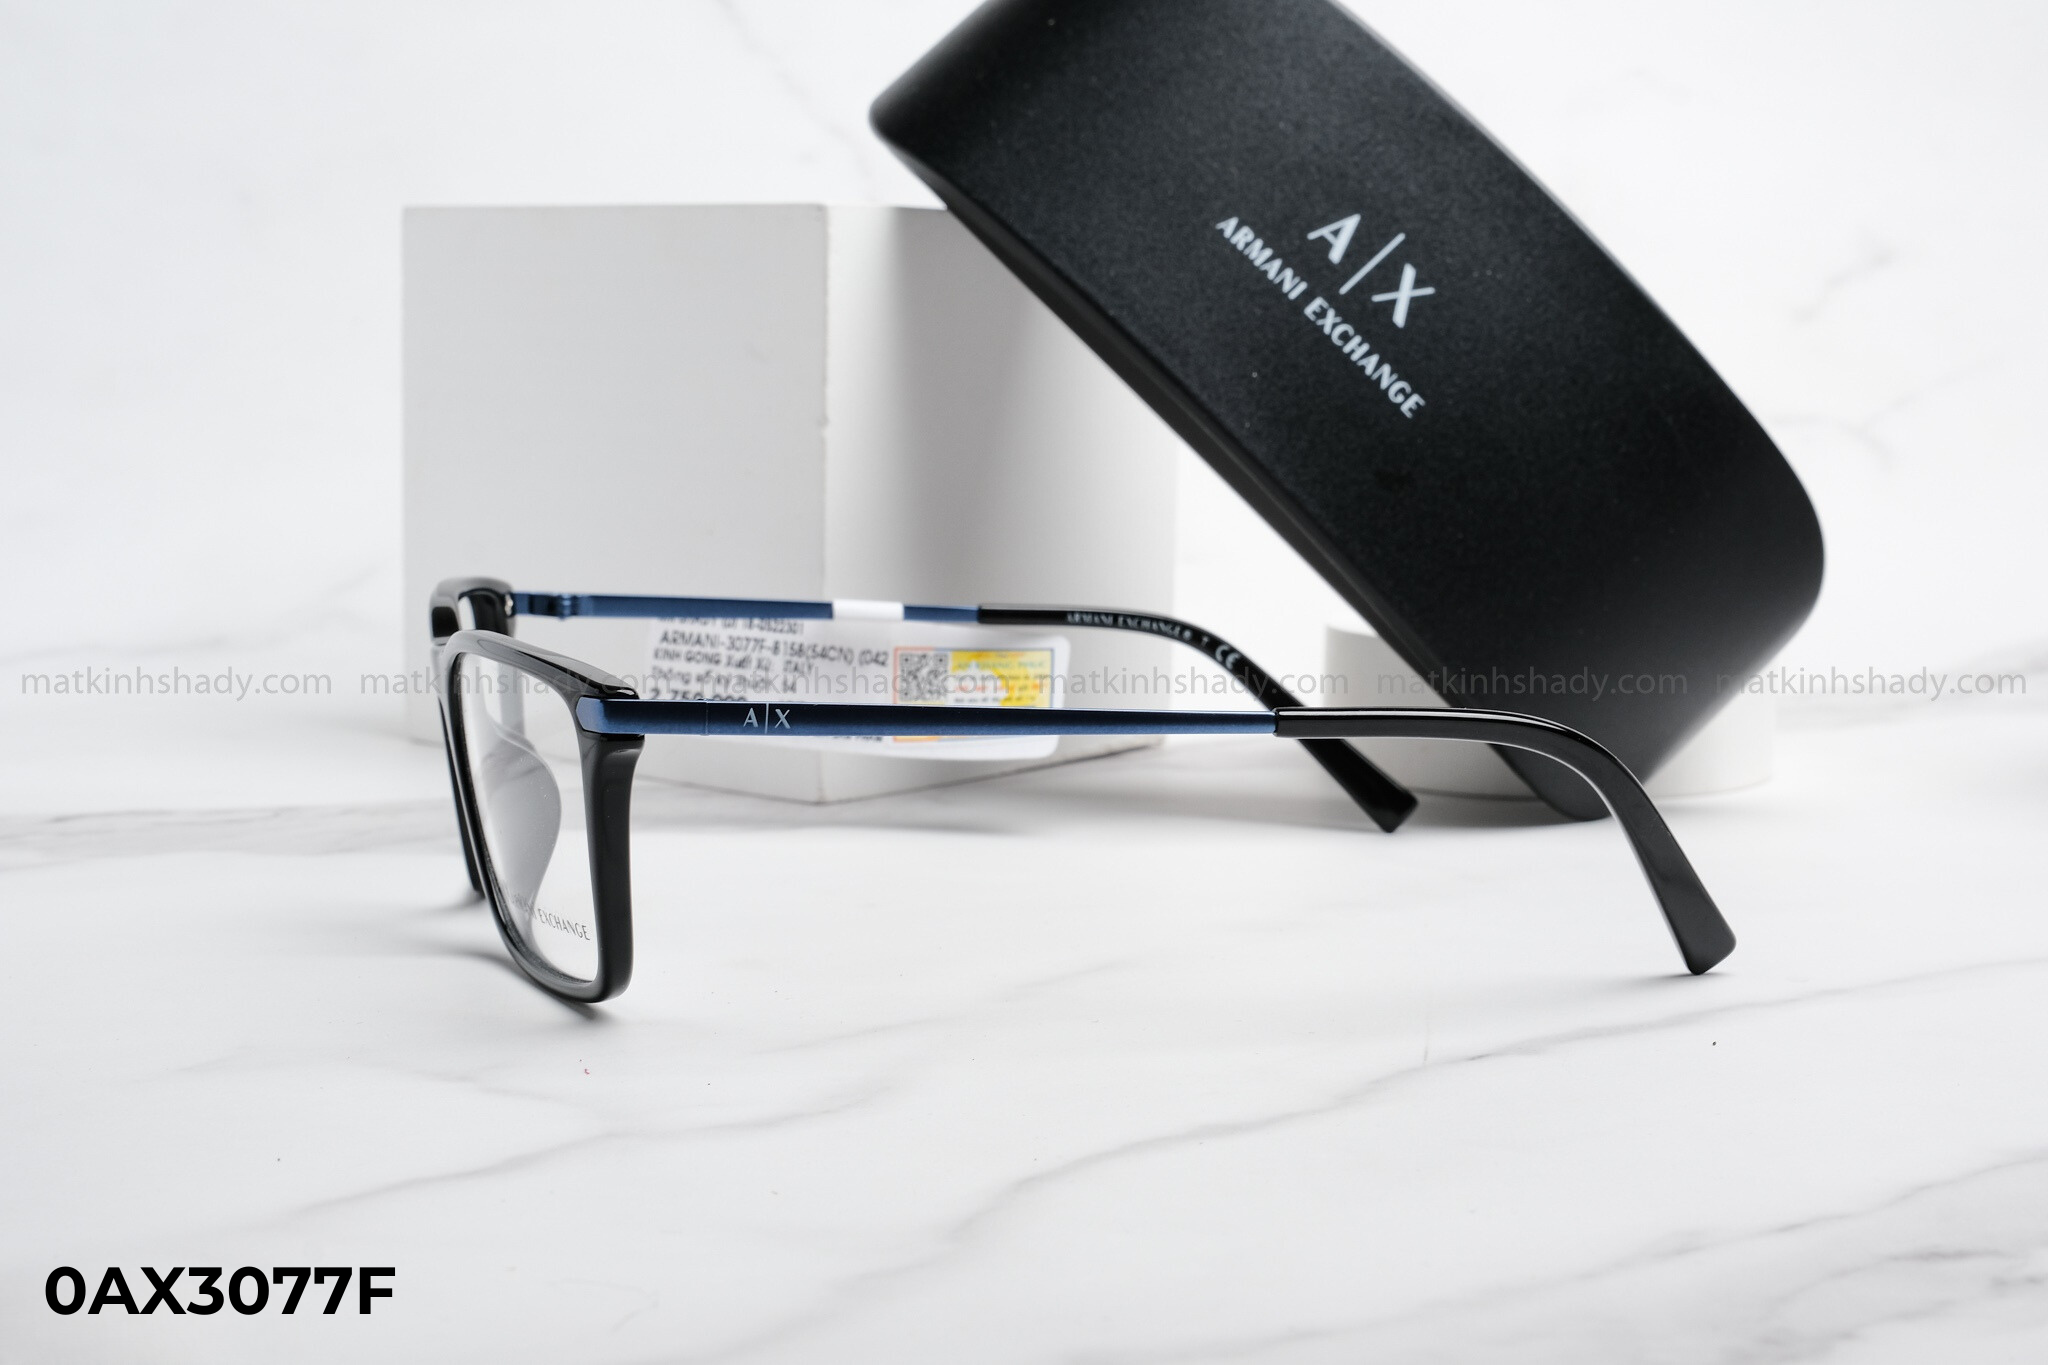  Armani Exchange Eyewear - Glasses - 0AX3077 